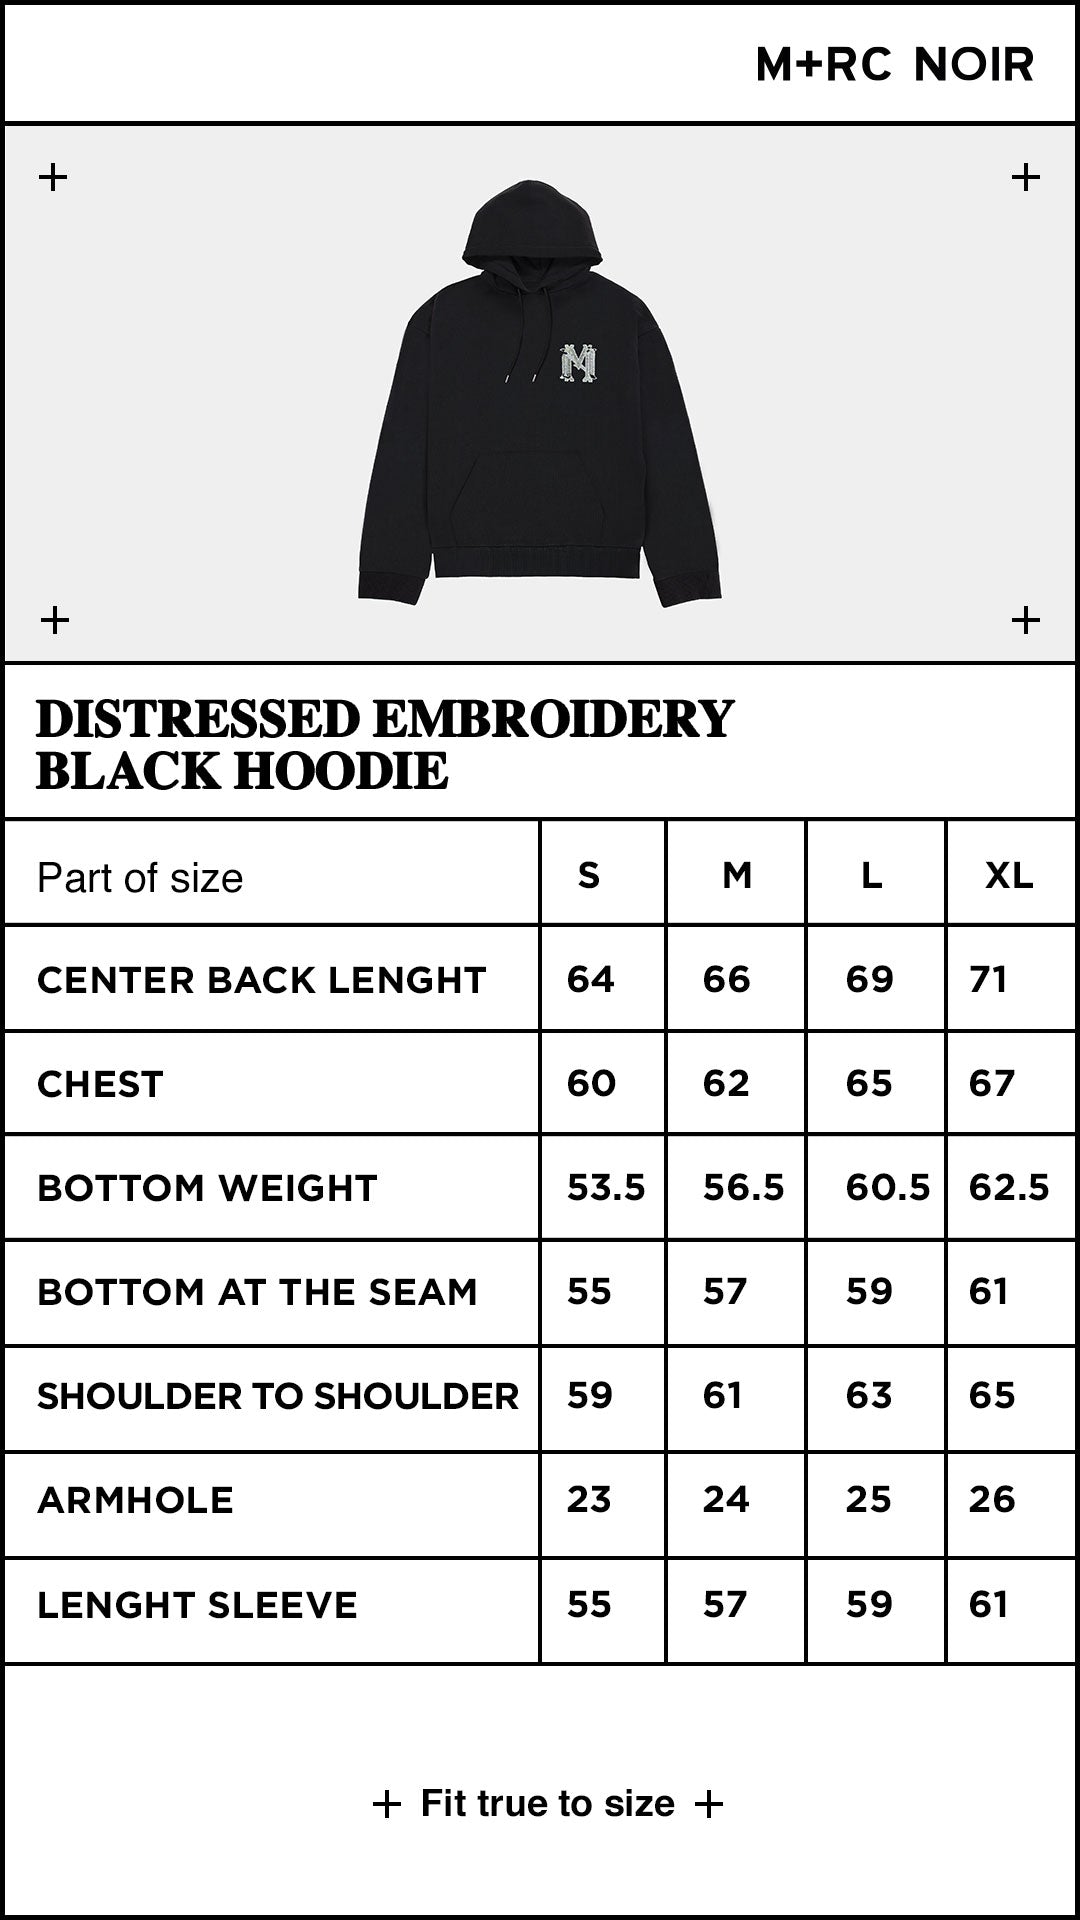 Distressed embroidery black hoodie